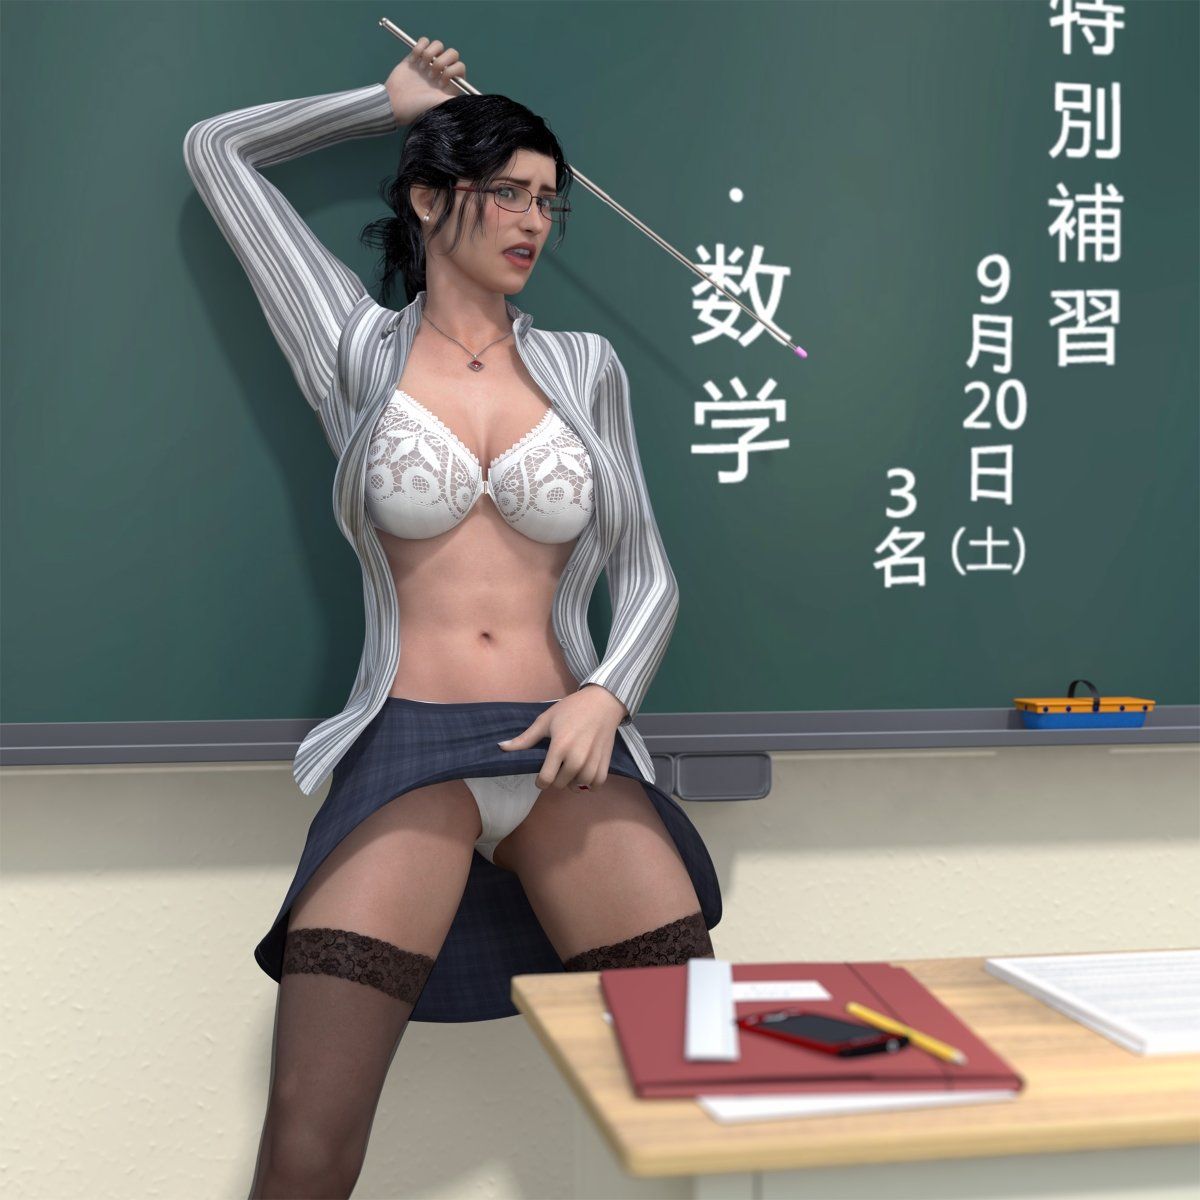 Woman teacher